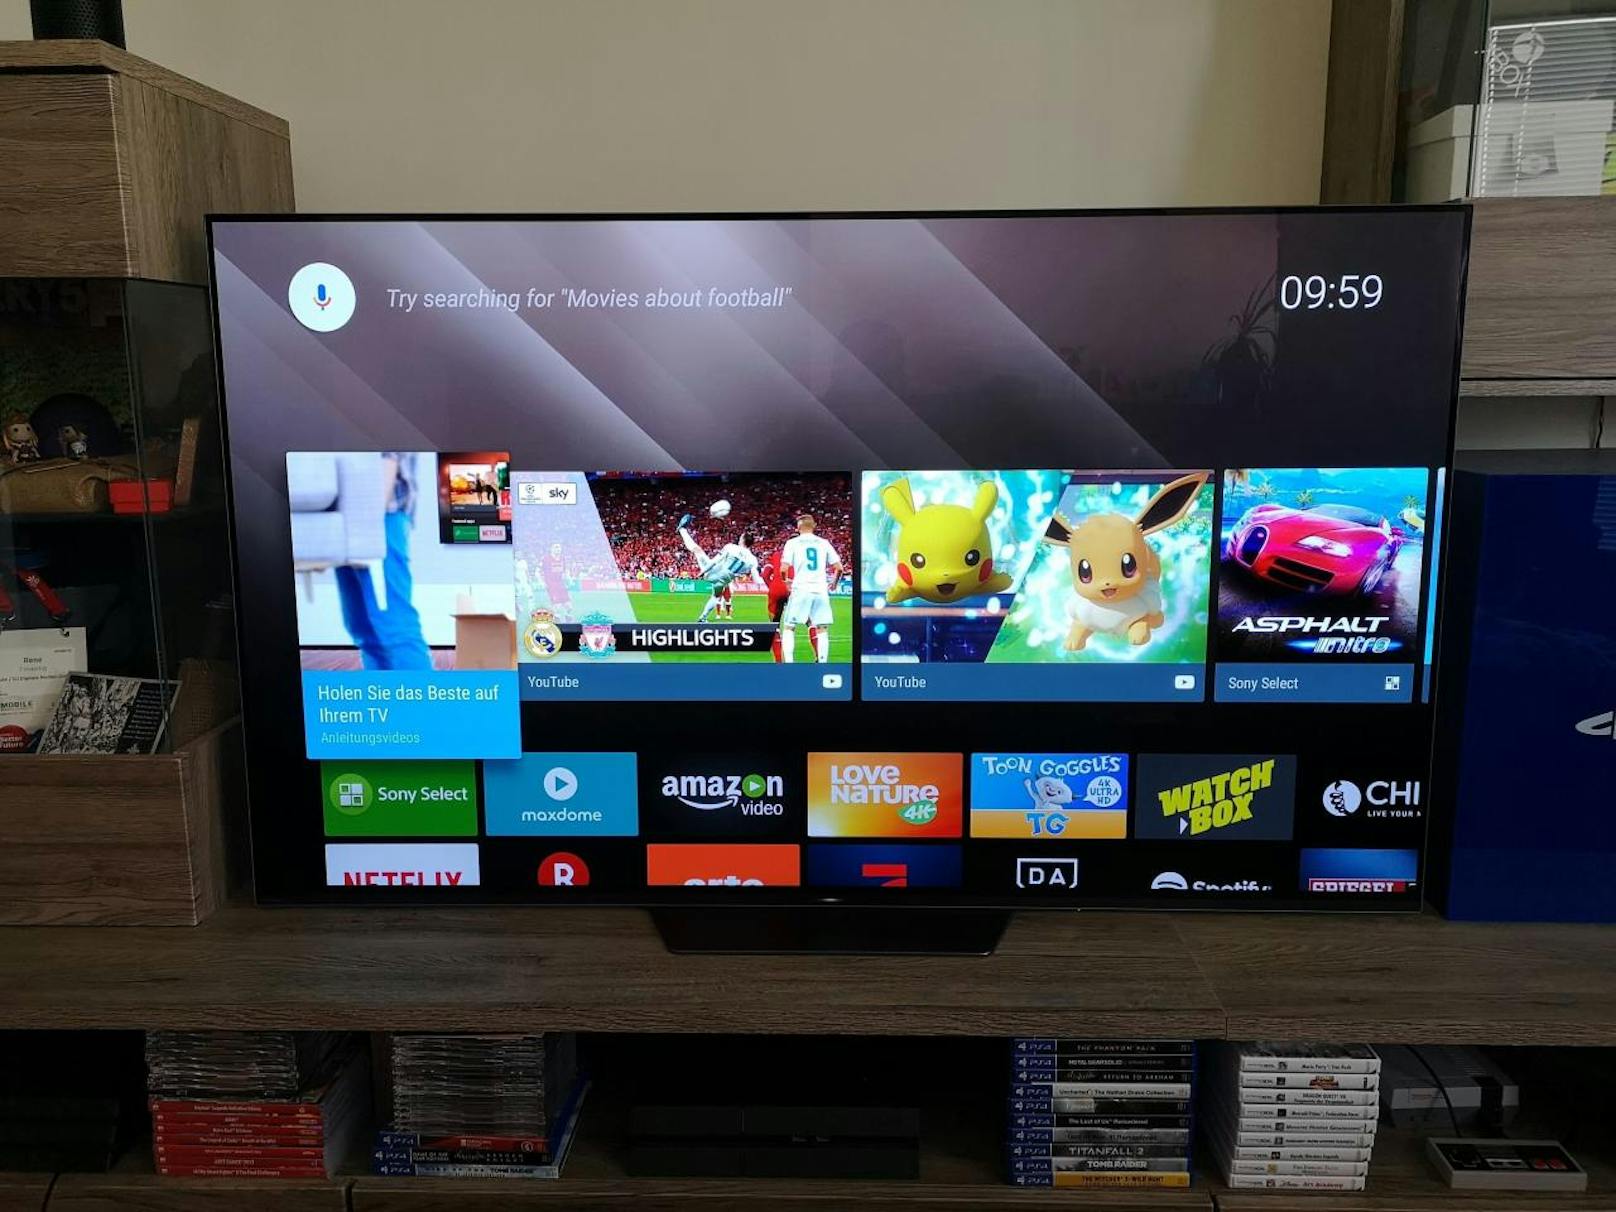 Am TV selbst kommt die Android-TV-Plattform zum Einsatz. Sie funktioniert zuverlässig, ist schnell nach den eigenen Wünschen eingerichtet und selbsterklärend. Google-Dienste wie Cast oder Home werden ebenso unterstützt und die neuesten 4K-HDR-Appversionen von Netflix, Amazon Prime Video, YouTube und Co. sind vorhanden.